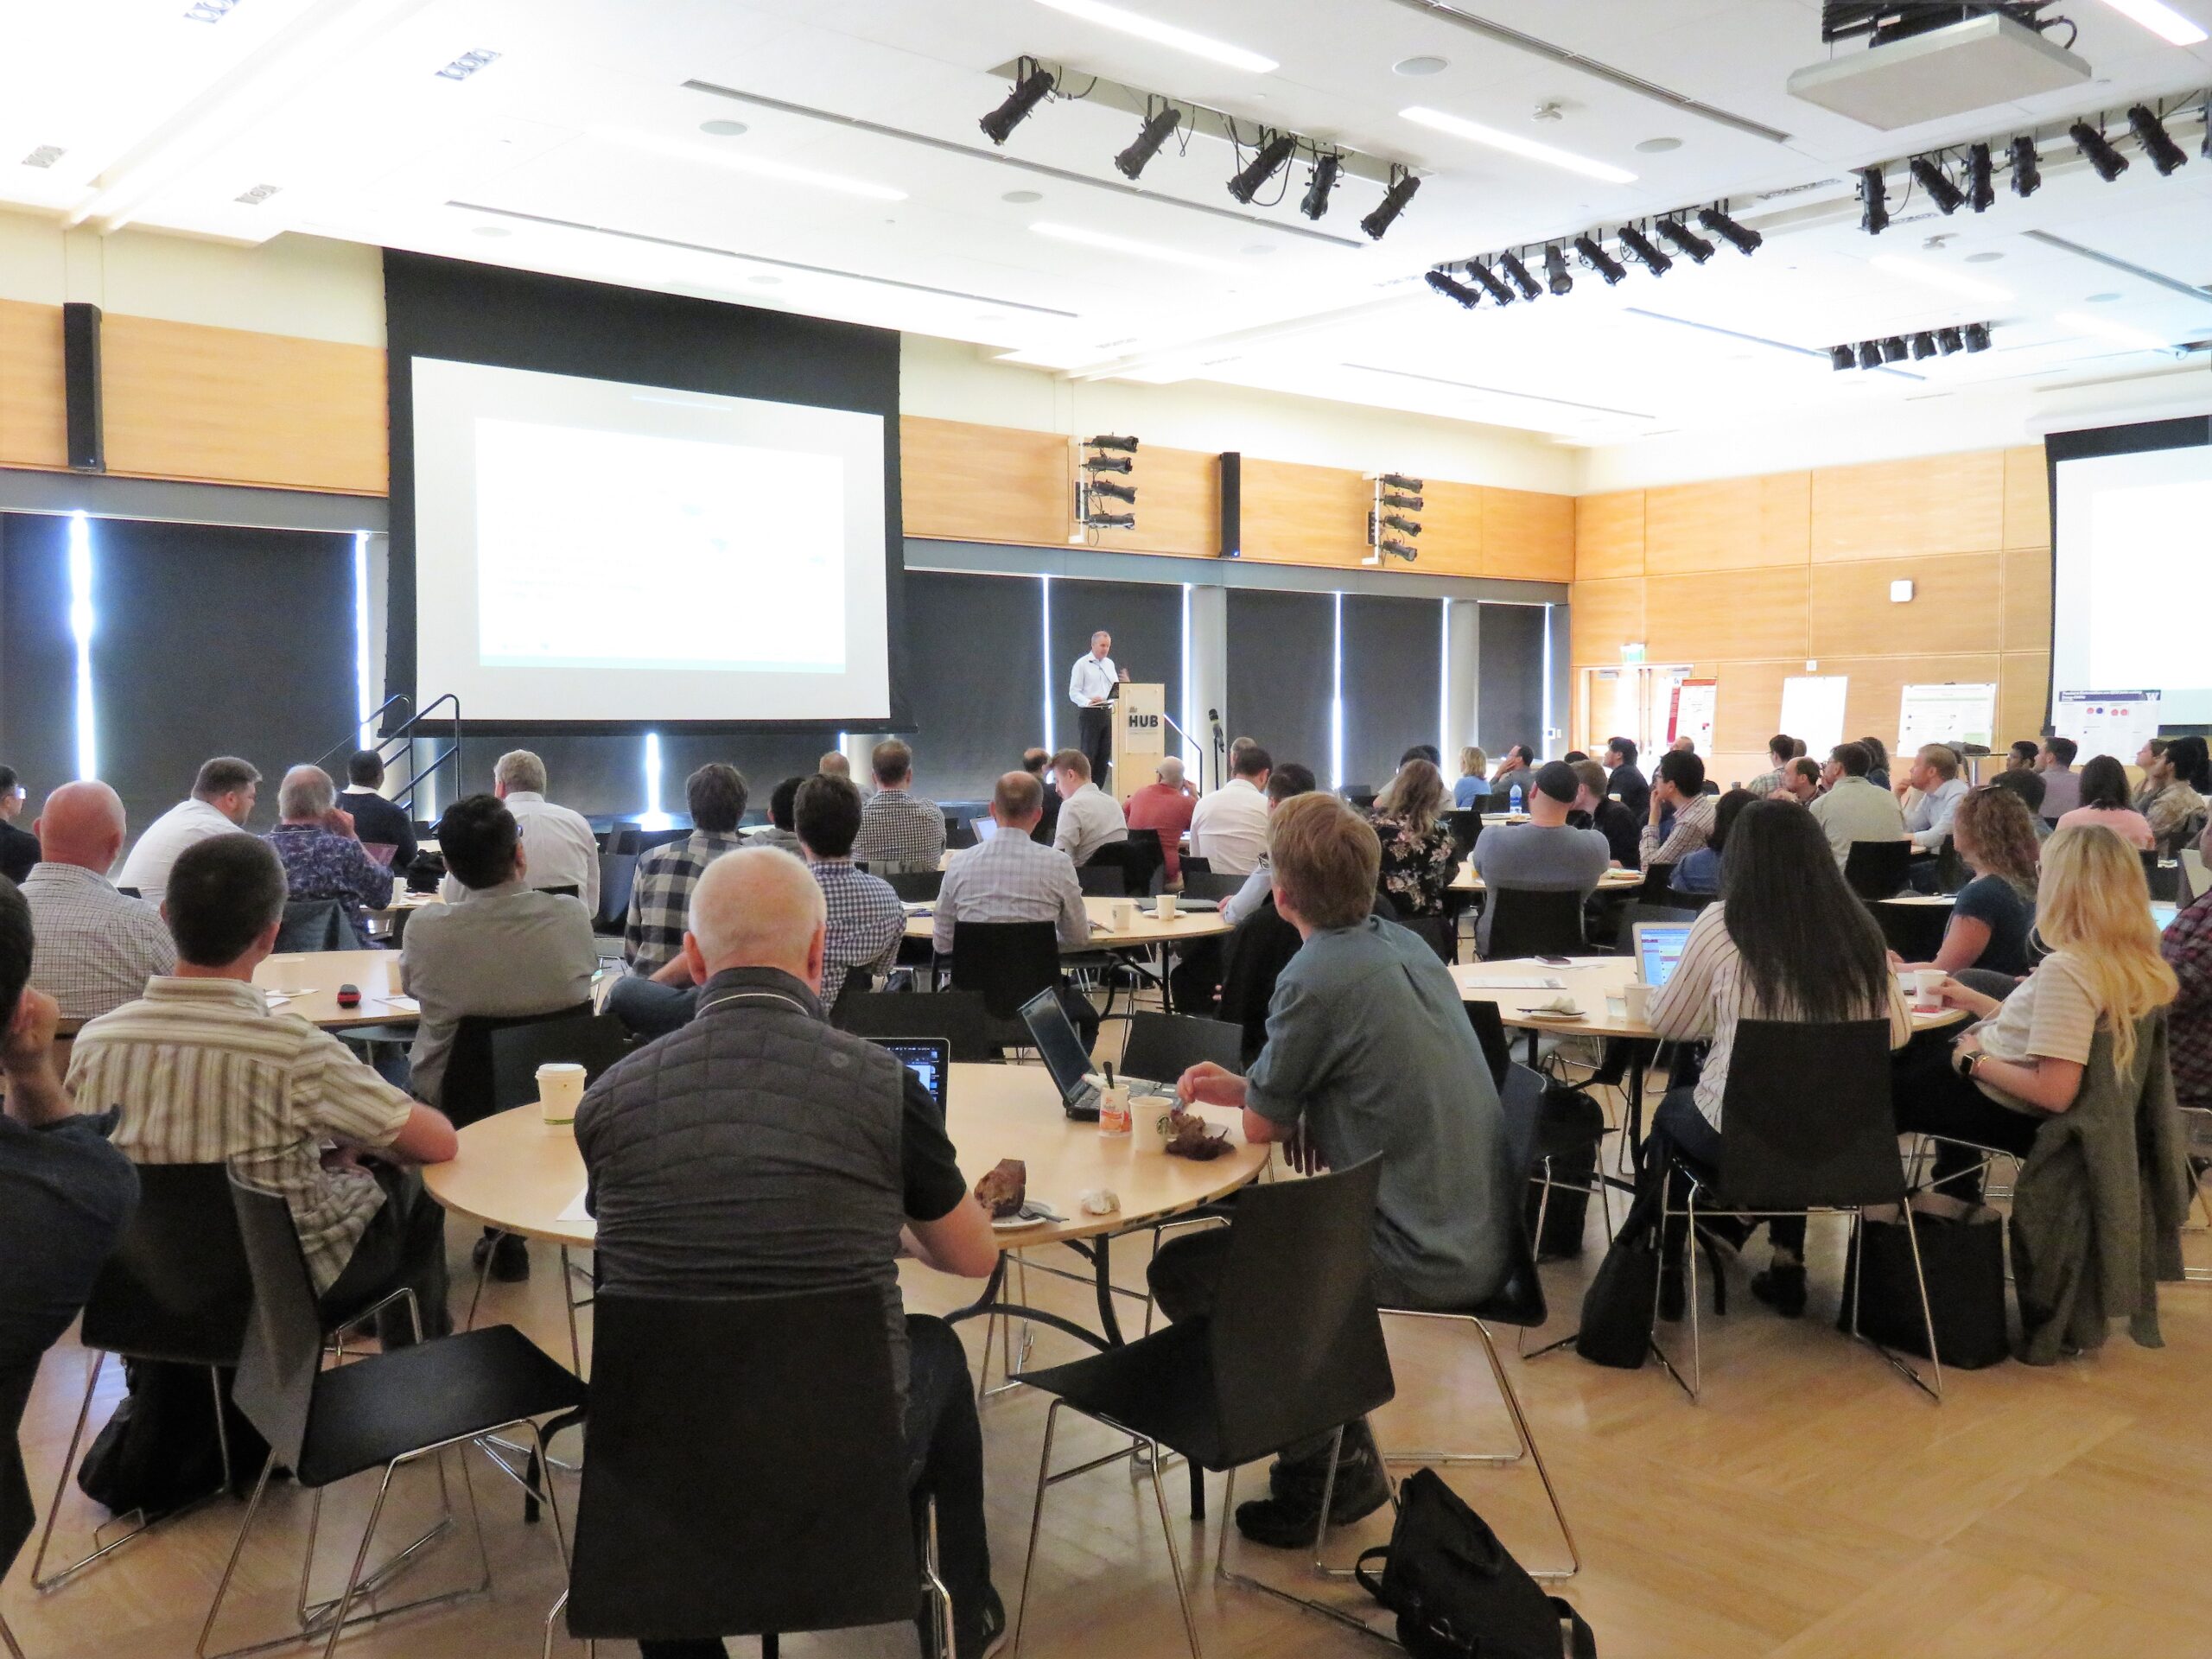 UW hosts the first annual Northwest Data Science Summit